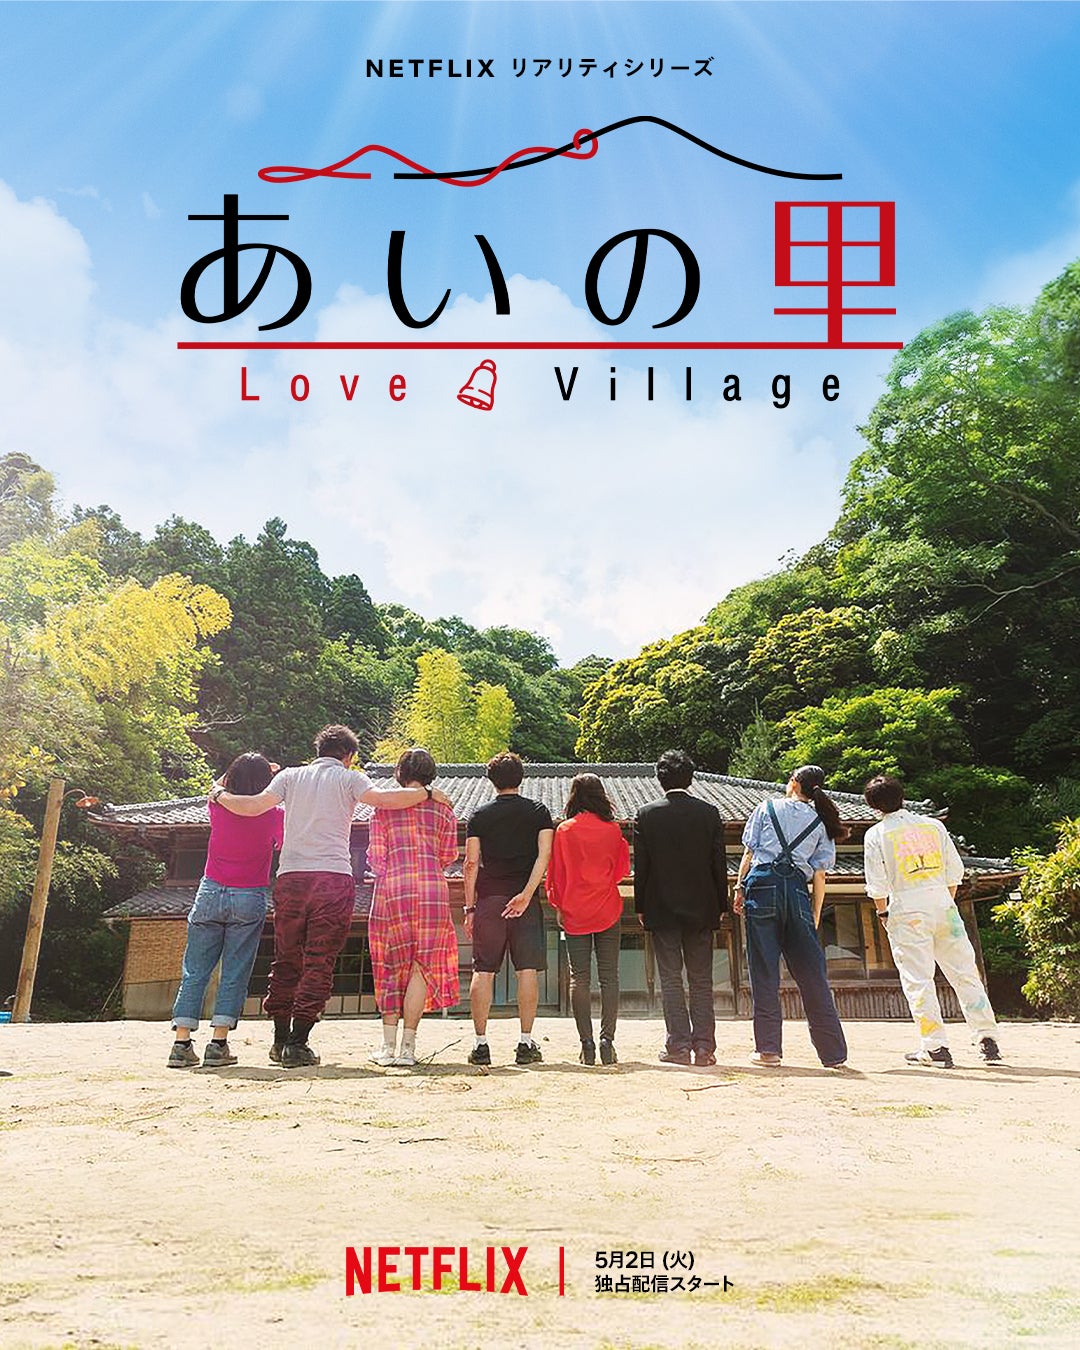 TV ratings for Love Village (あいの里) in Denmark. Netflix TV series